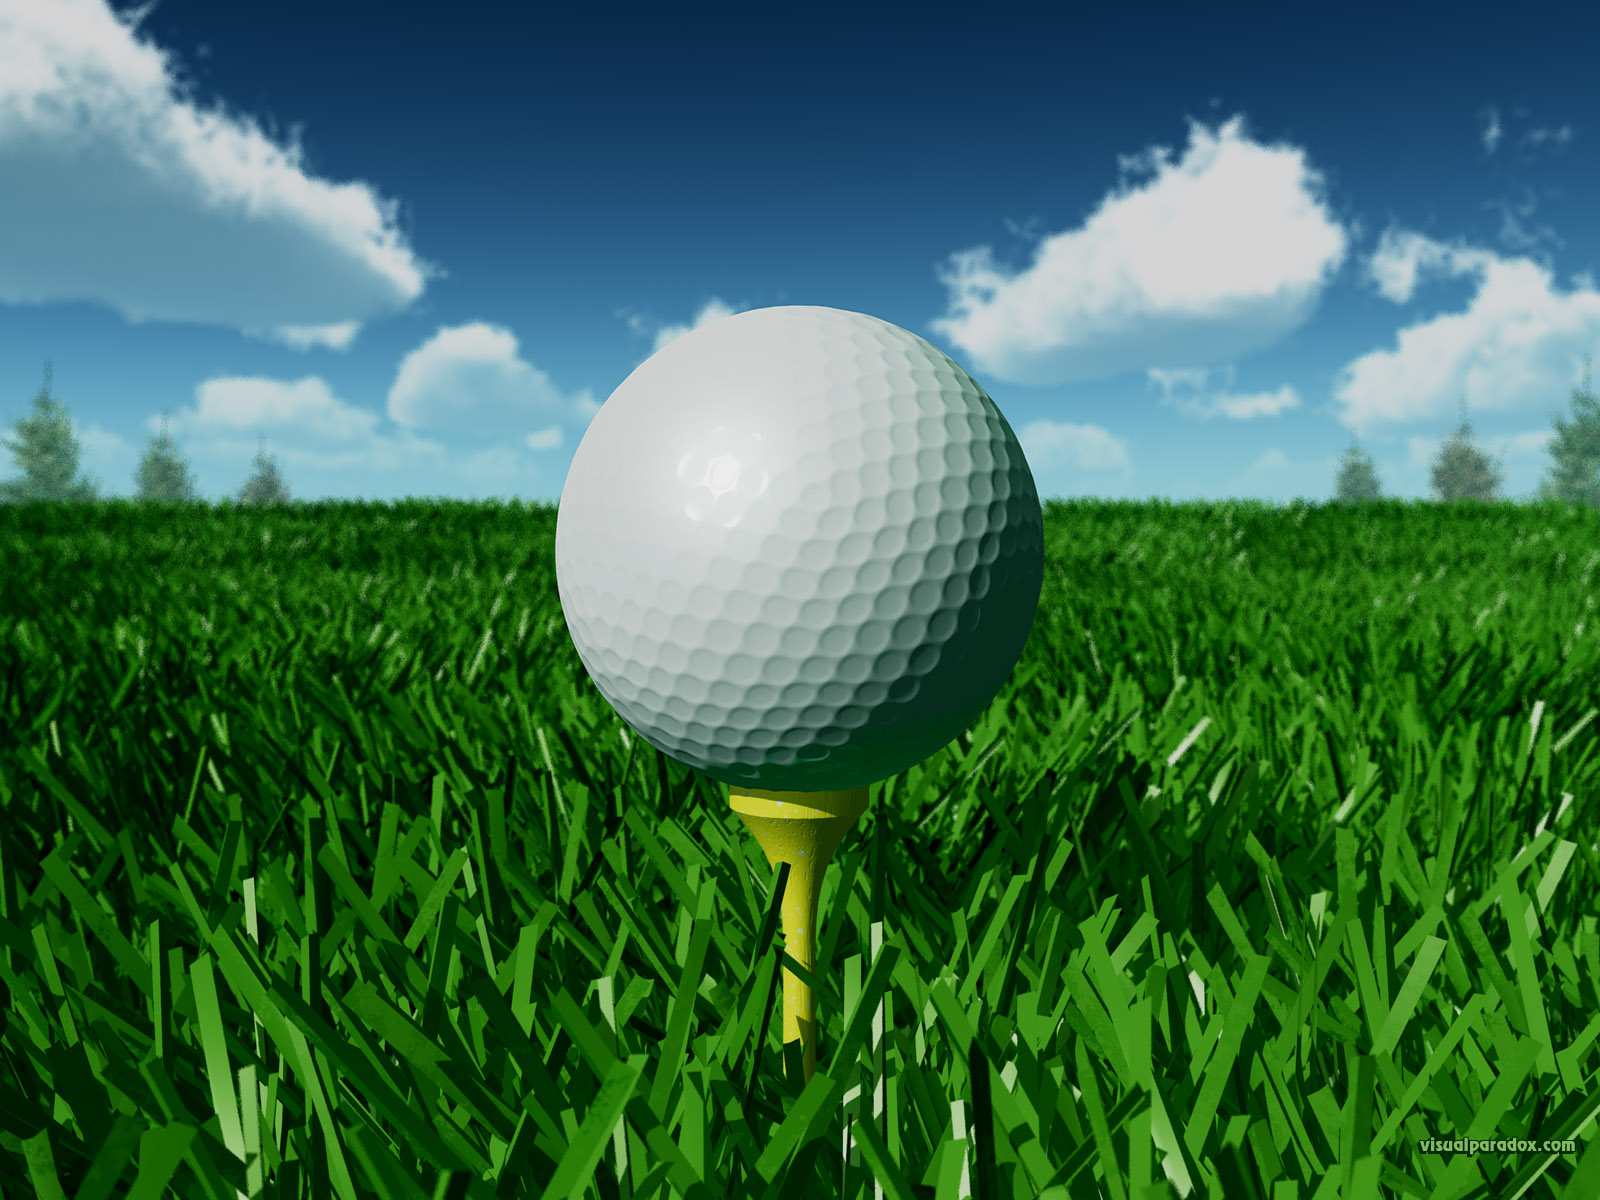 golf golfball tee off fairway grass day closeup ball 3d